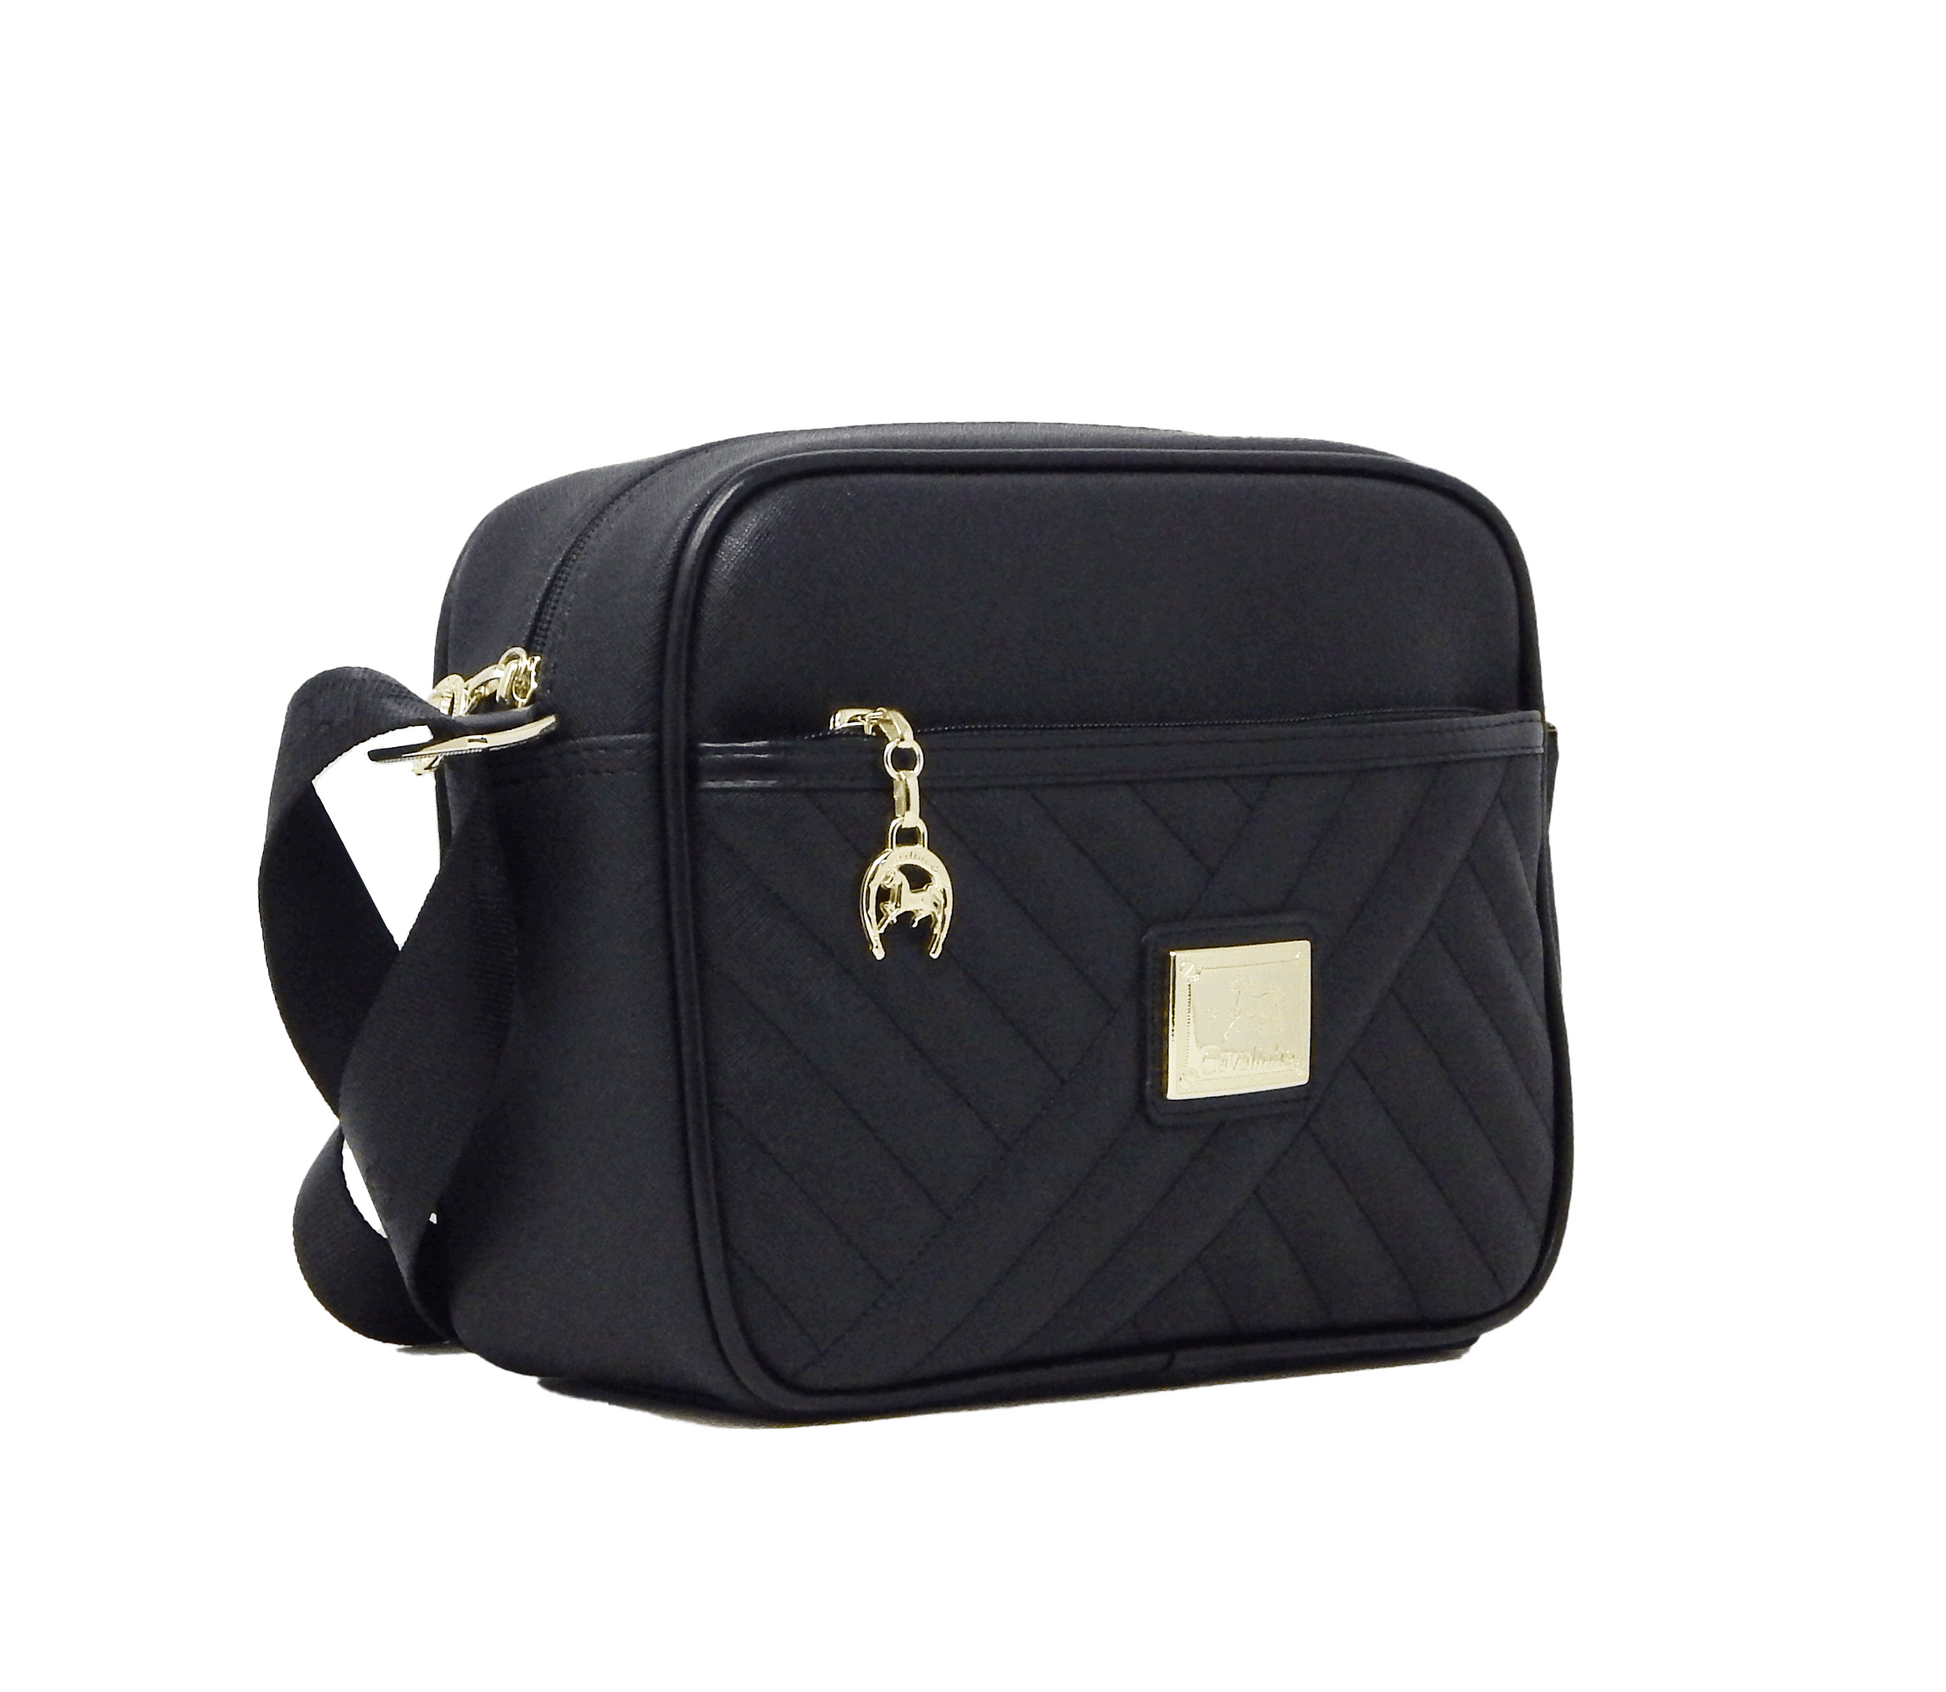 Cavalinho Charming Crossbody Bag - Black - 18470324.01_2